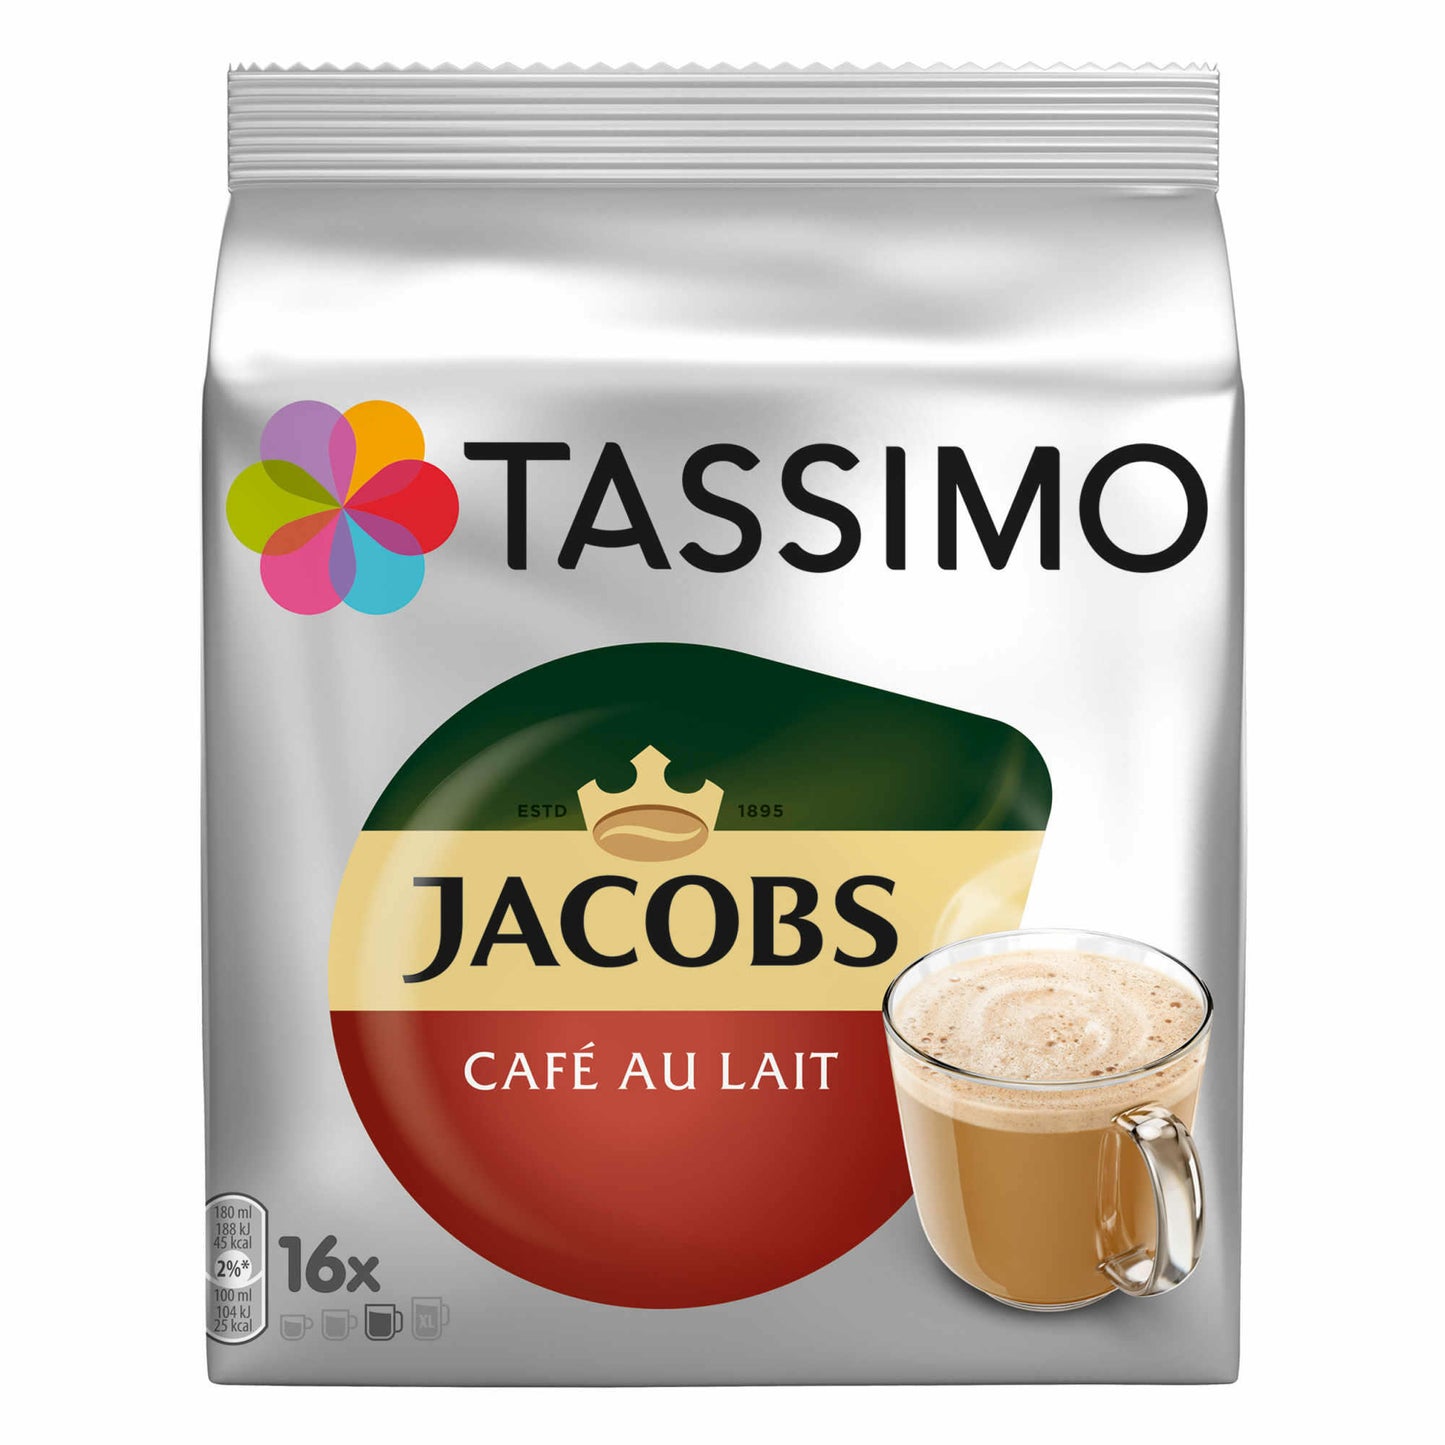 Tassimo Jacobs Café au Lait, Kaffee, Kaffeekapsel, Milchkaffee aus gemahlenem Röstkaffee, 16 T-Discs / Portionen